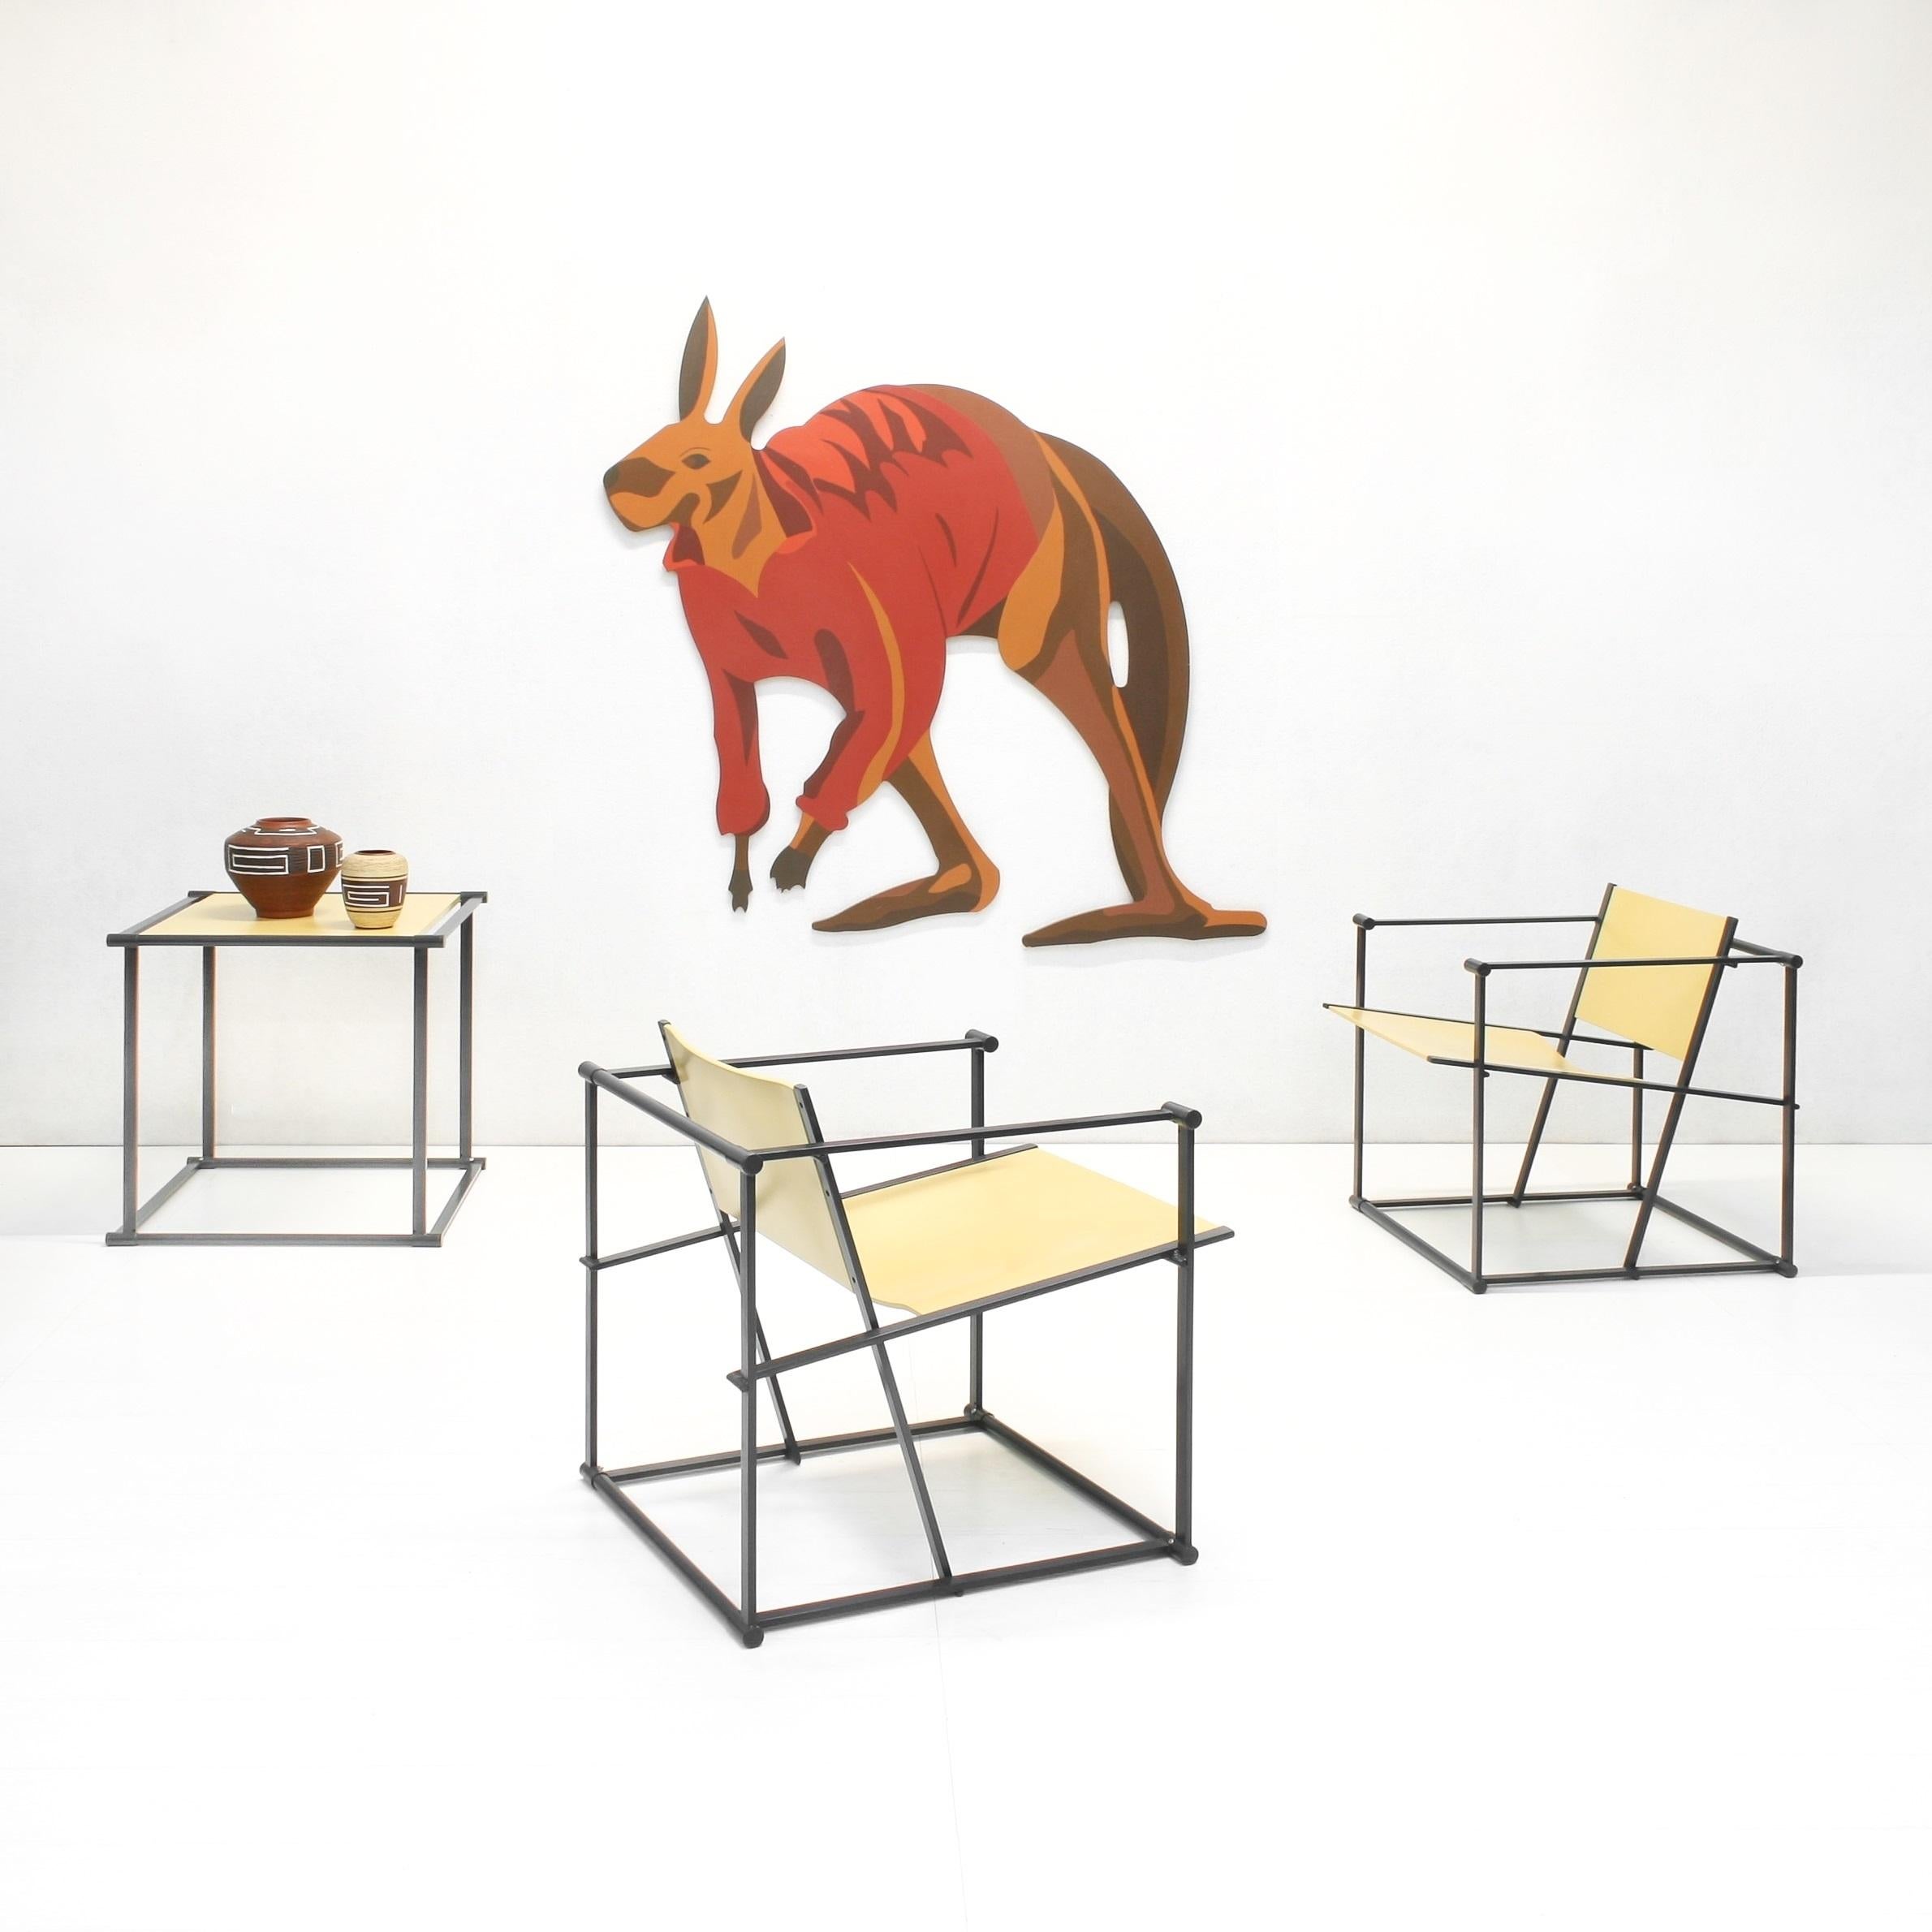 Charakteristisches Set aus zwei FM62 Cubic Stühlen, entworfen von Radboud van Beekum für Pastoe in den 1980er Jahren in den Niederlanden. 

Die Stühle bestehen aus einem dunkelgrau lackierten, quadratischen Metallgestell und einer Rückenlehne und